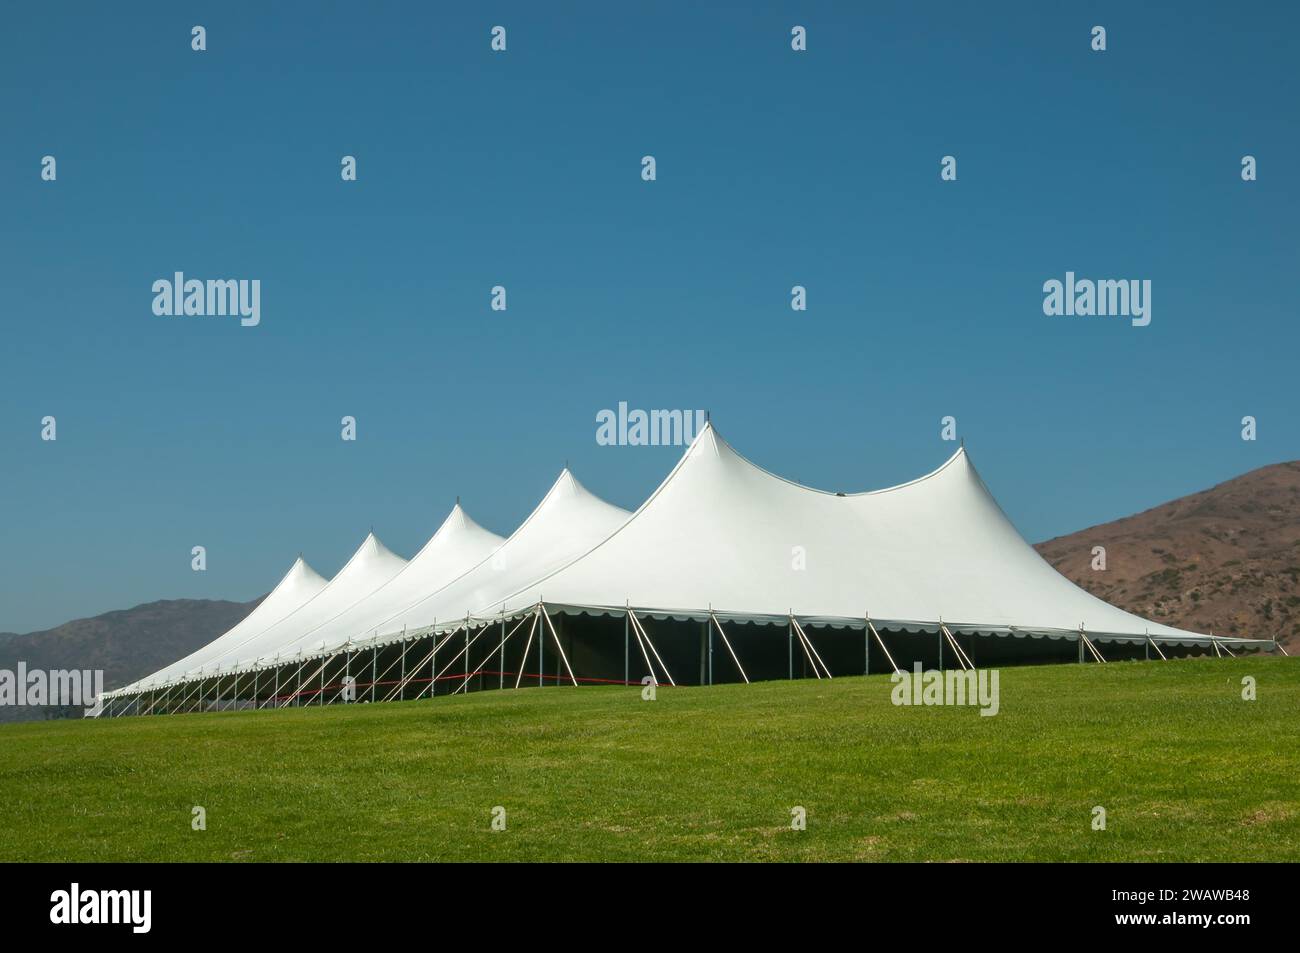 Grande tente blanche pour les événements dans un champ vert, avec des montagnes en arrière-plan Banque D'Images